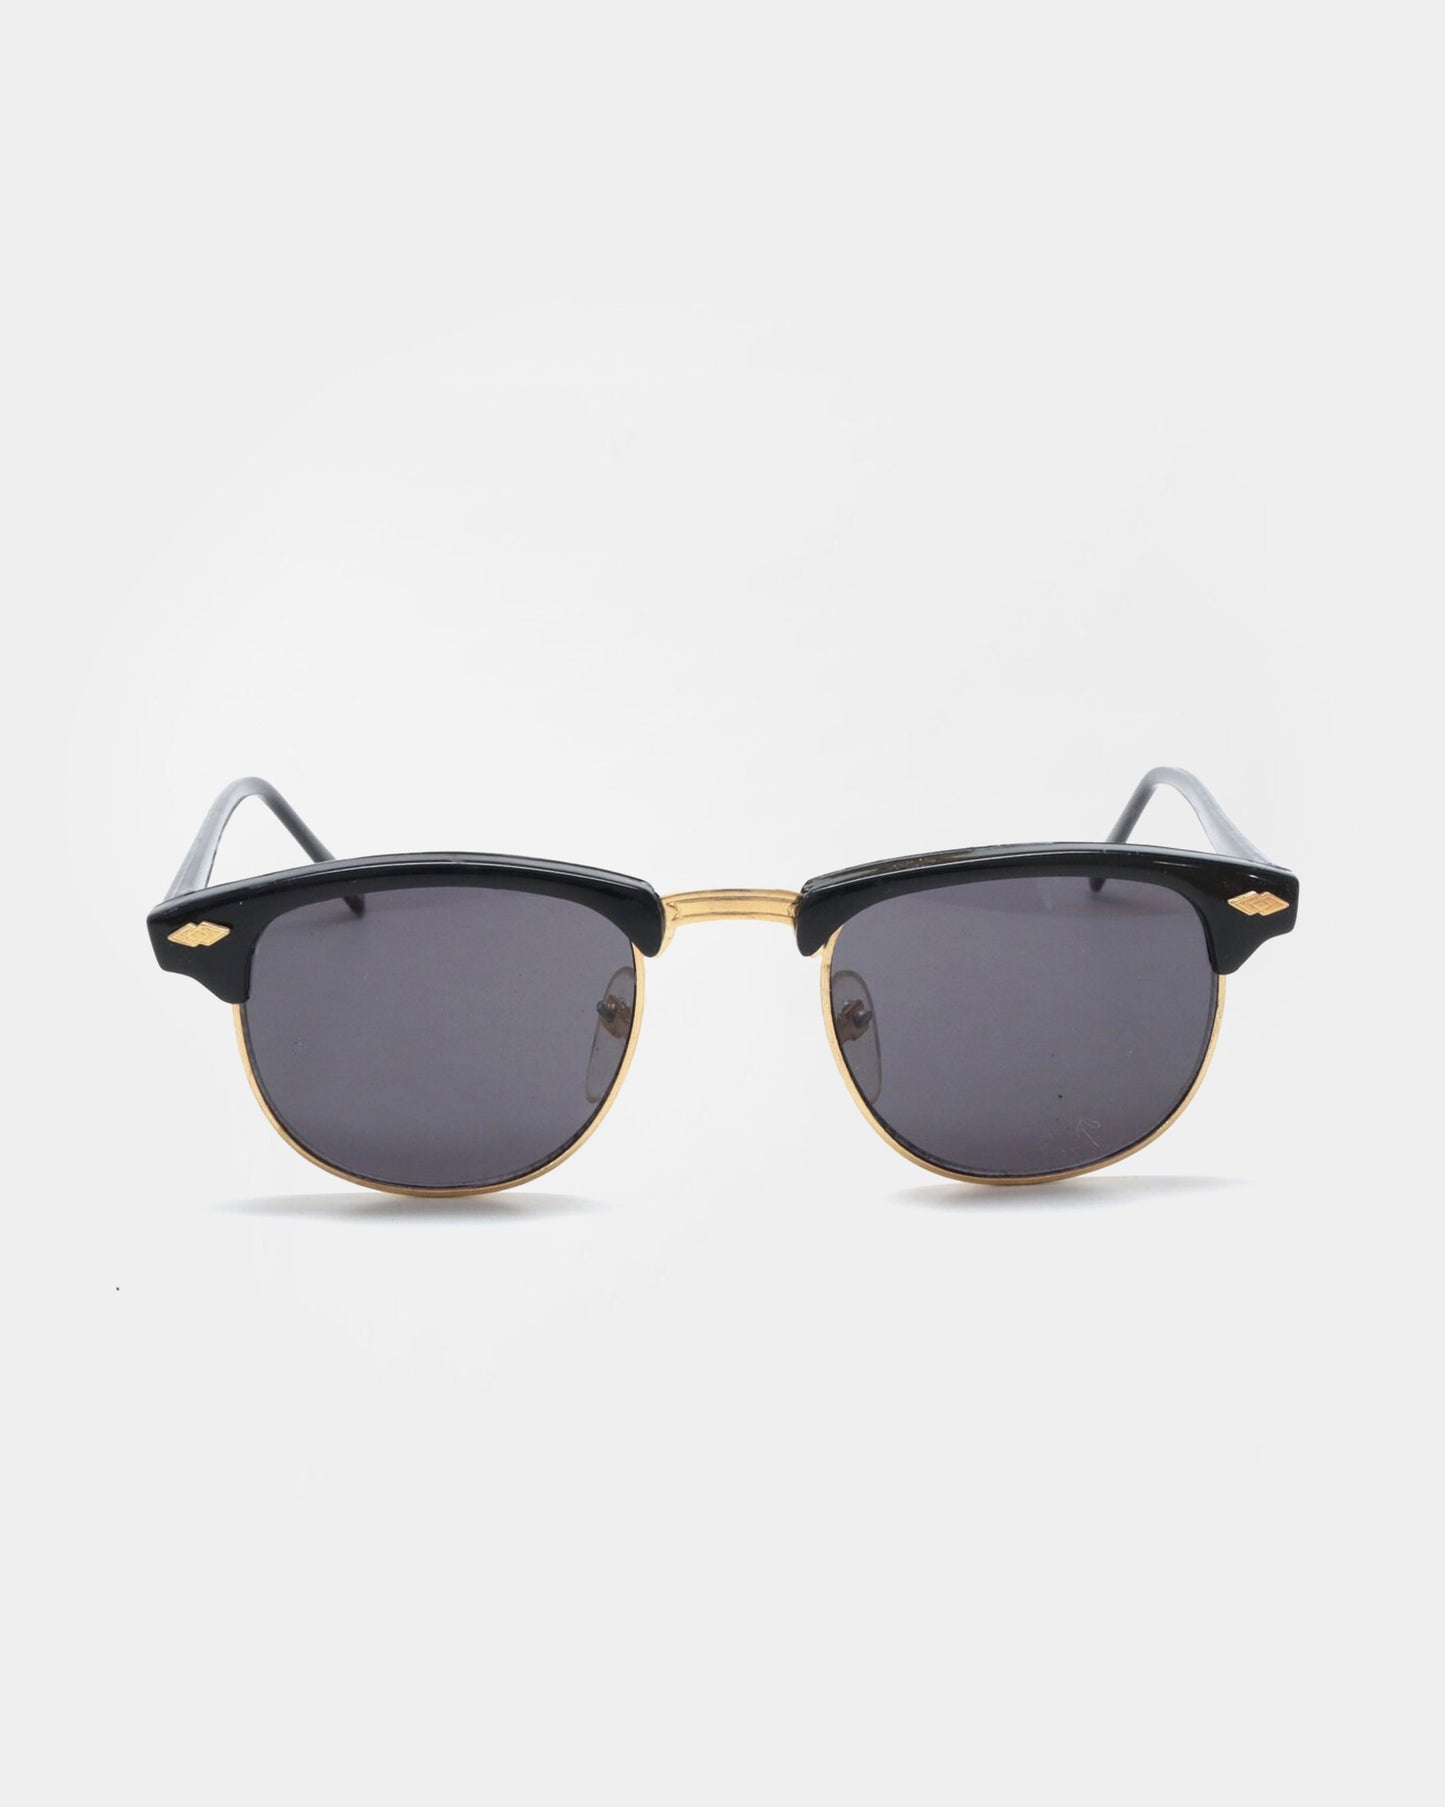 NOS 90s Frame Sunglasses